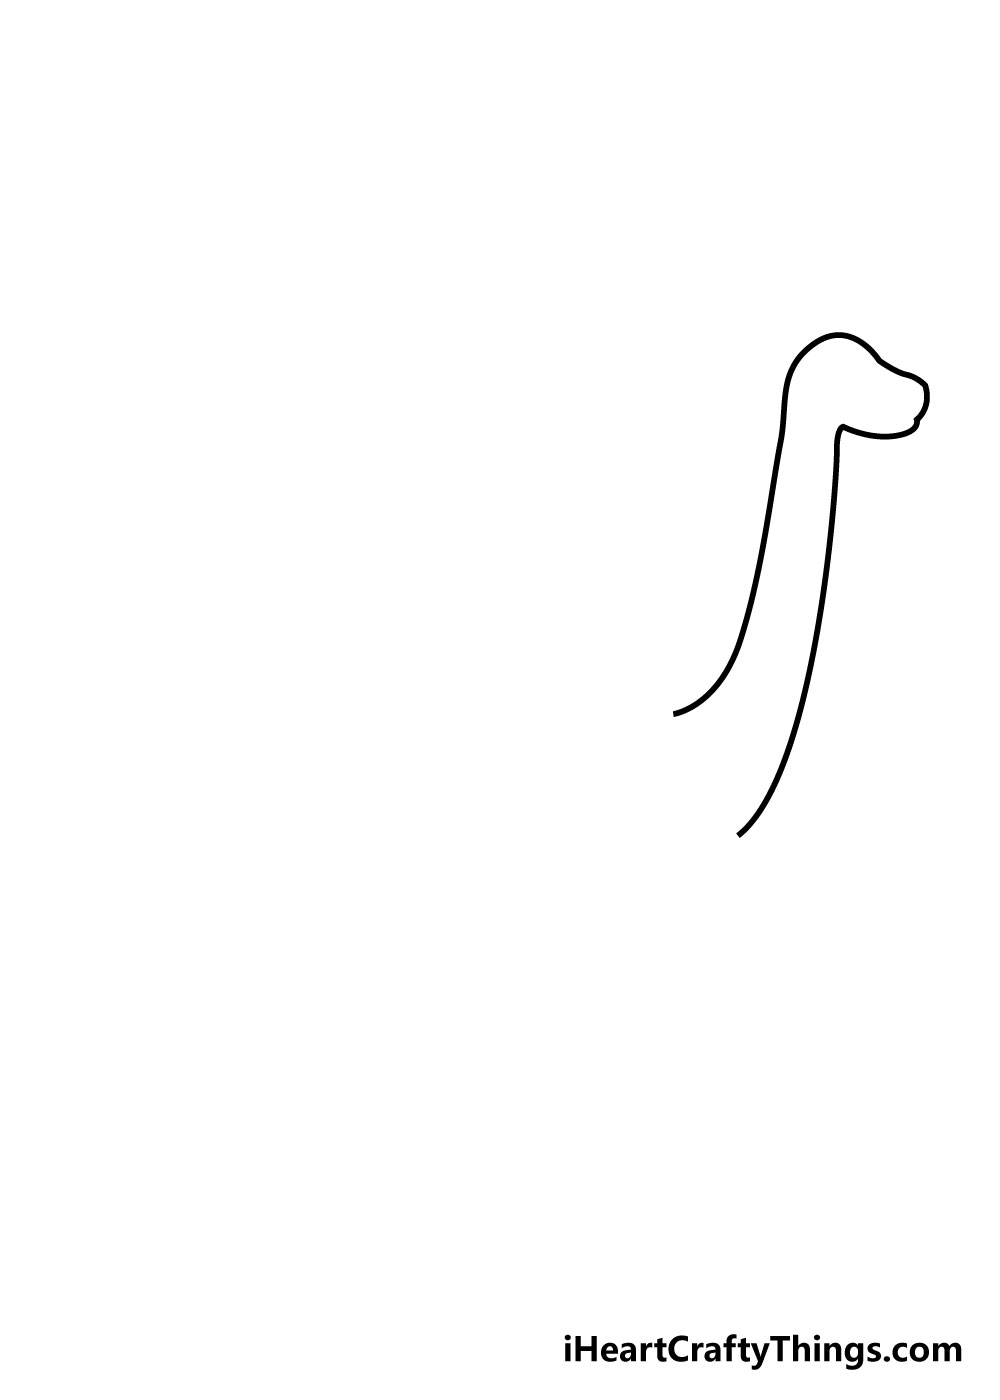 How to draw a dinosaur 2 - Hướng dẫn cách vẽ con khủng long đơn giản với 8 bước cơ bản